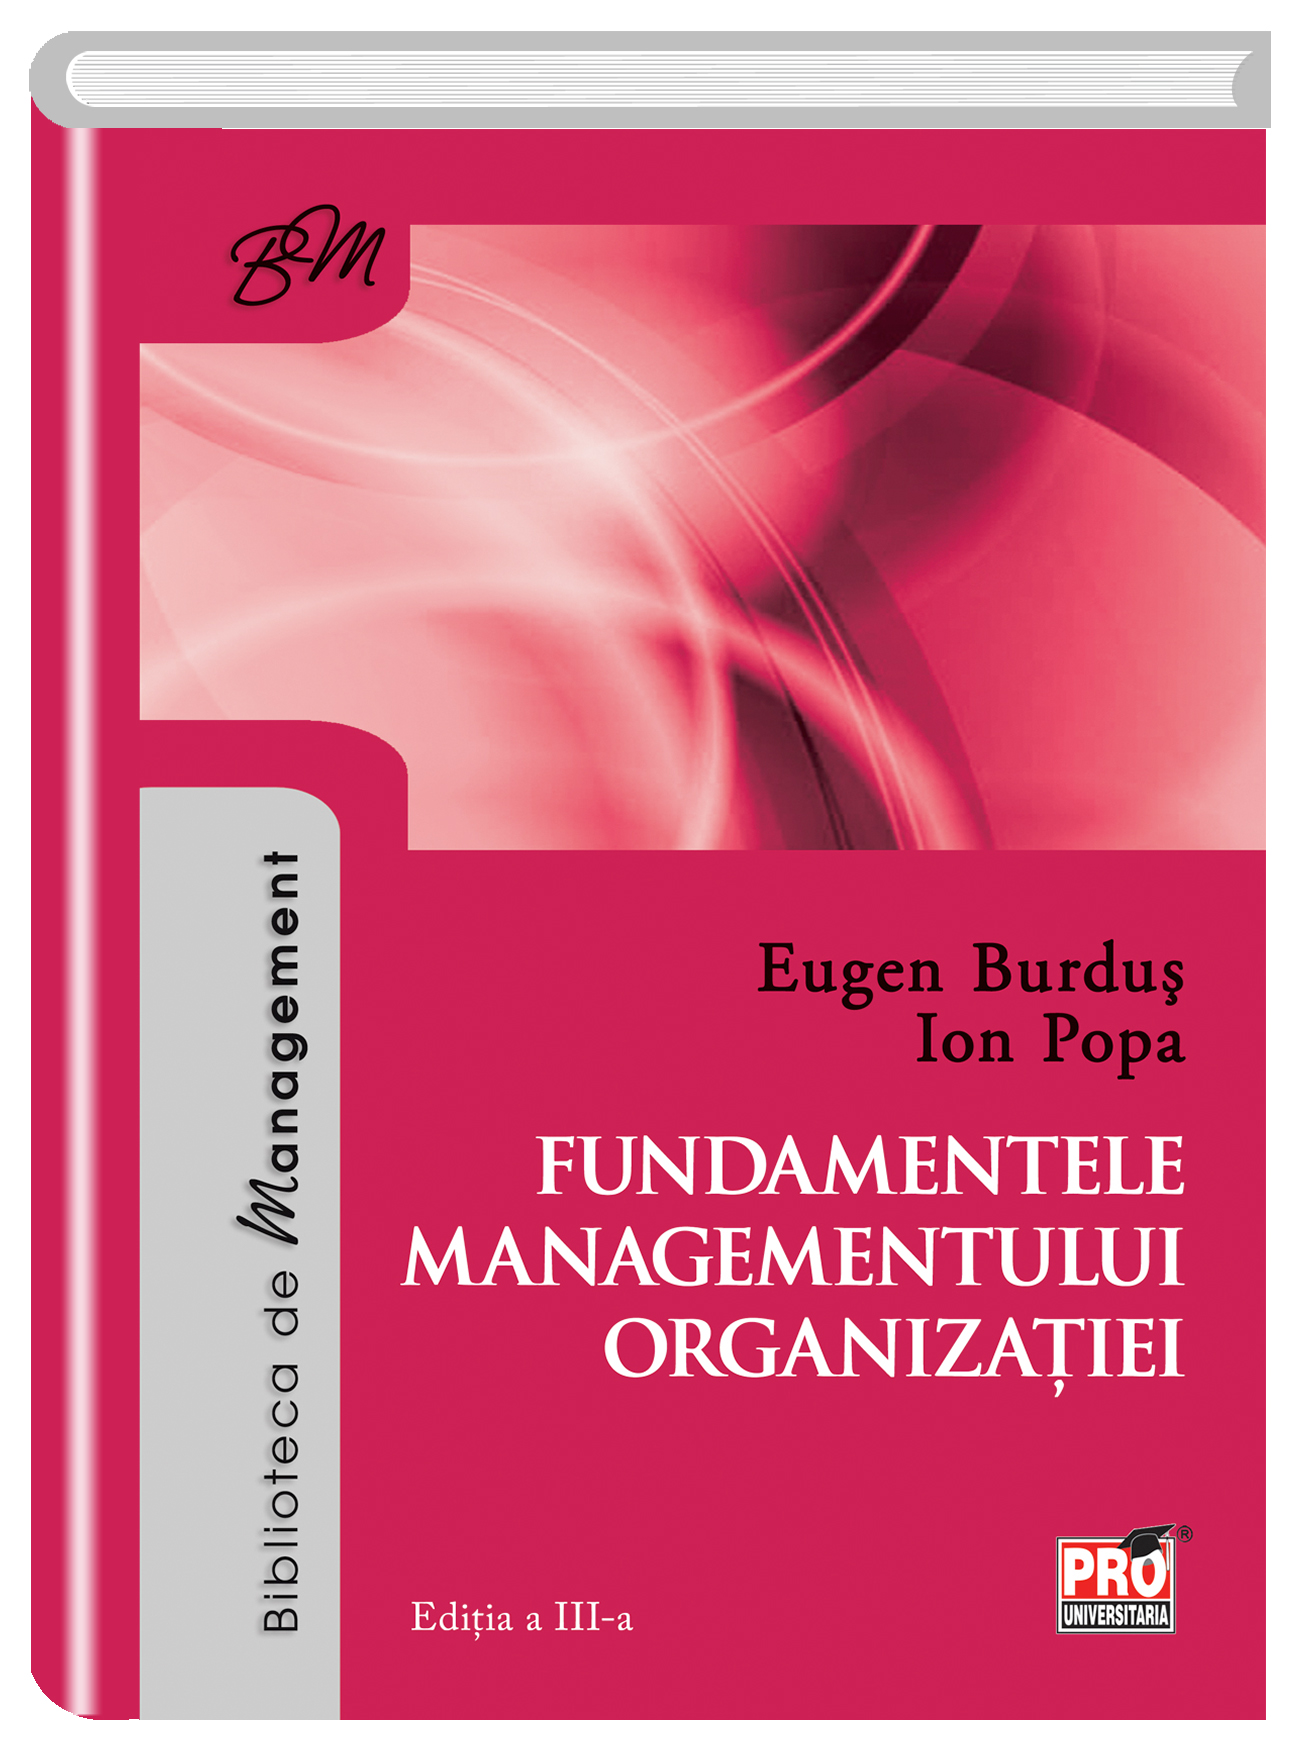 Fundamentele managementului organizatiei | Eugen Burdus, Ion Popa carturesti.ro imagine 2022 cartile.ro